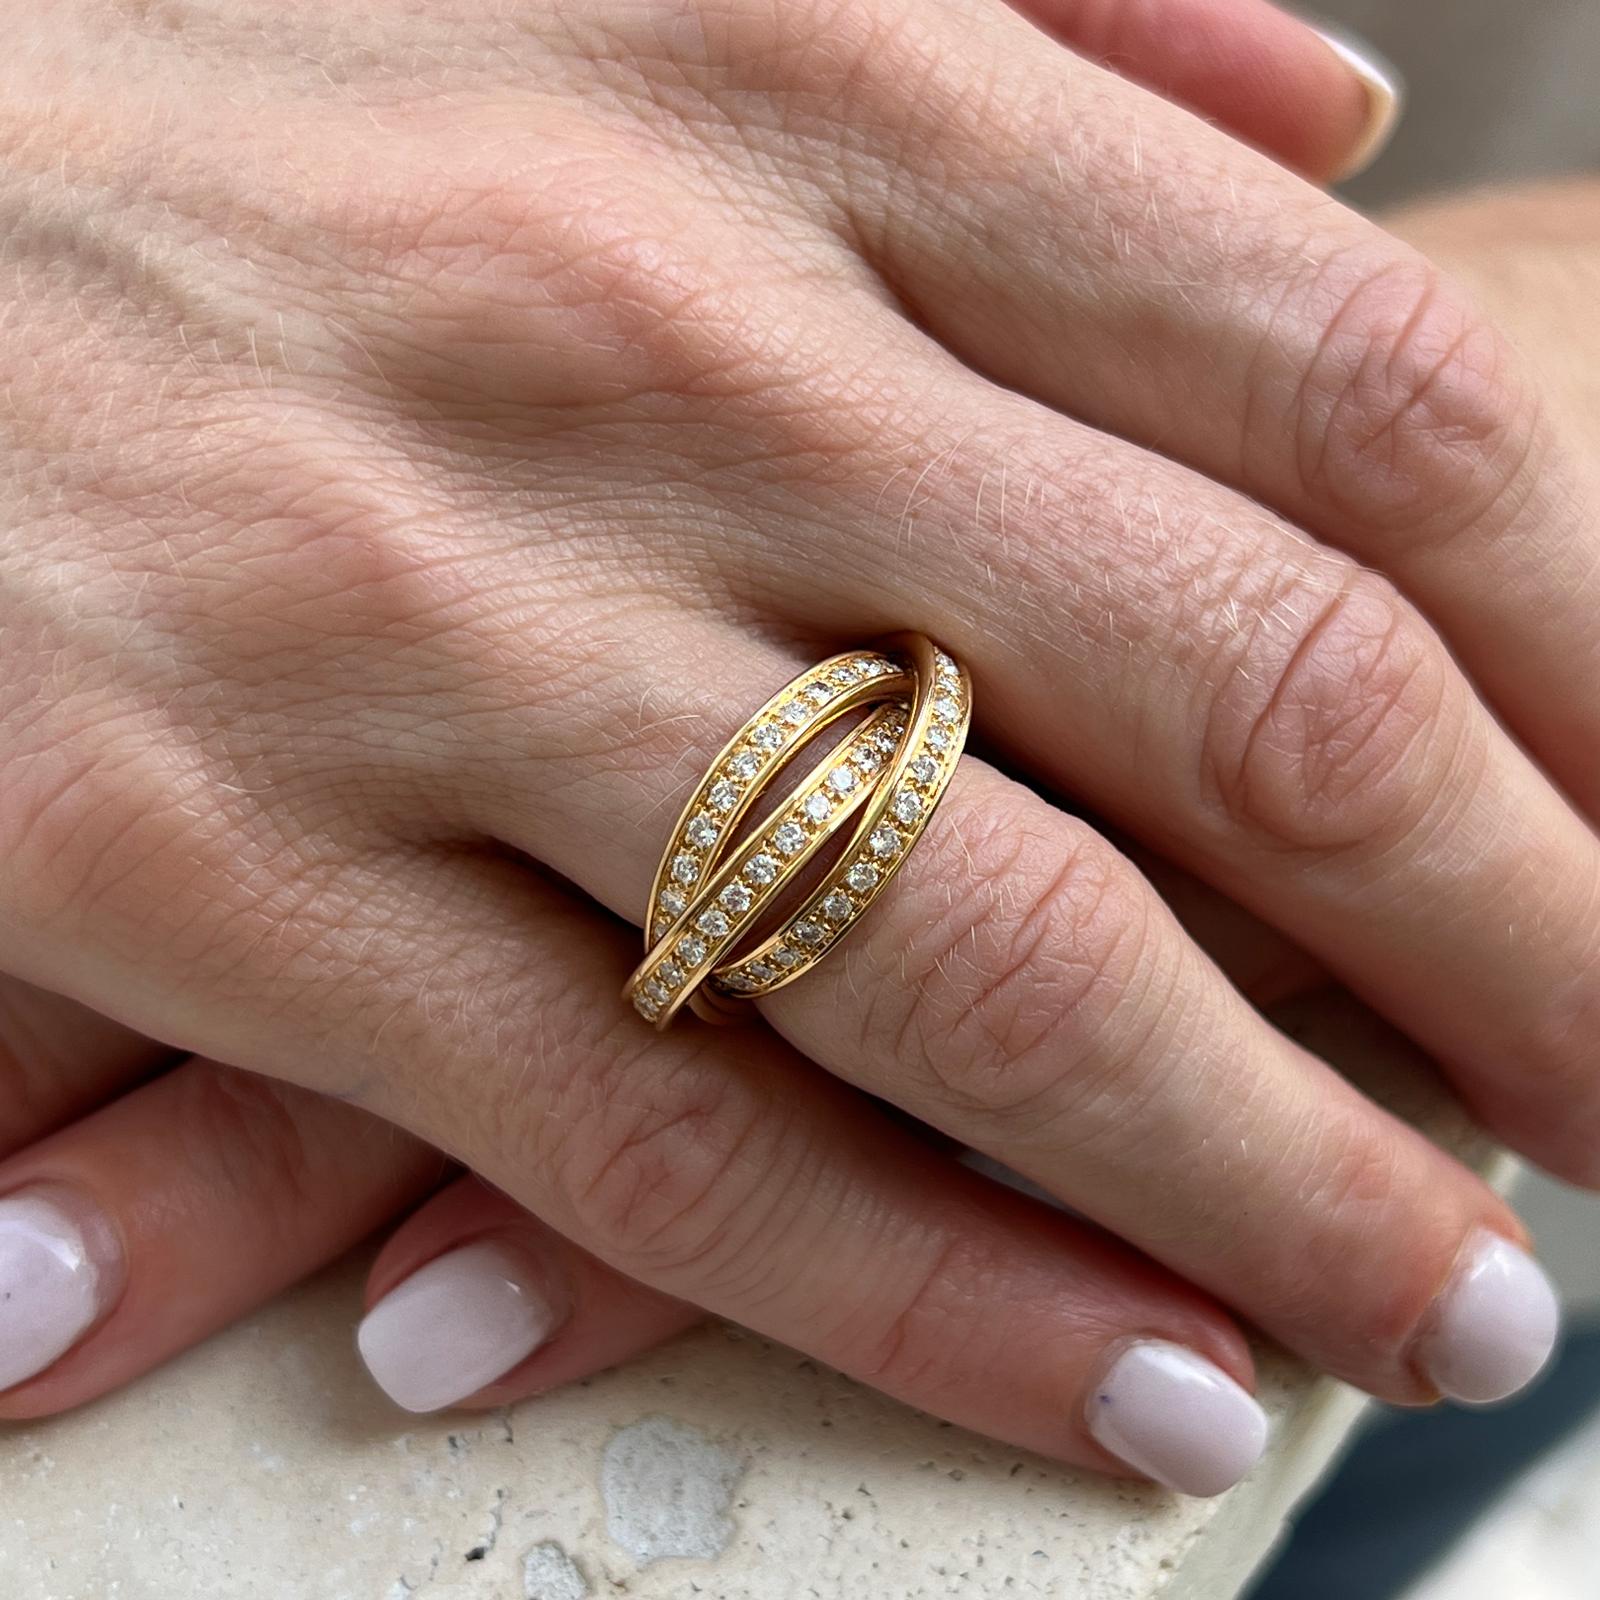 Authentischer Cartier Trinity Diamond Ring aus 18 Karat Gelbgold. Die drei Ringe sind mit runden Diamanten im Brillantschliff mit einem Gewicht von ca. 1,55 CTW besetzt. Die Bänder haben die Größe 52 (US-Größe 6). Signiert Cartier  750  52,